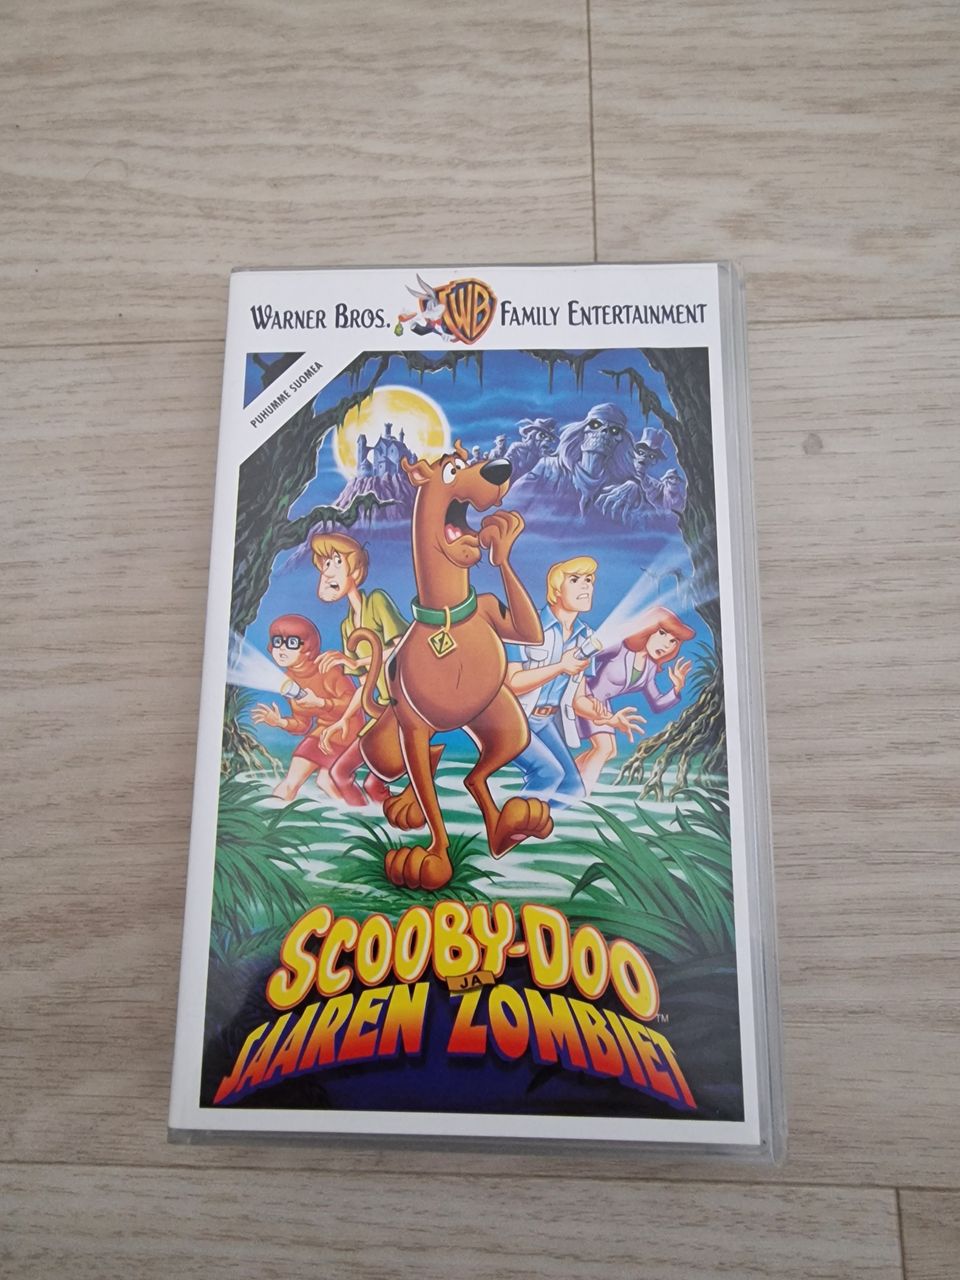 Scoopy-Doo Saaren zombiet VHS